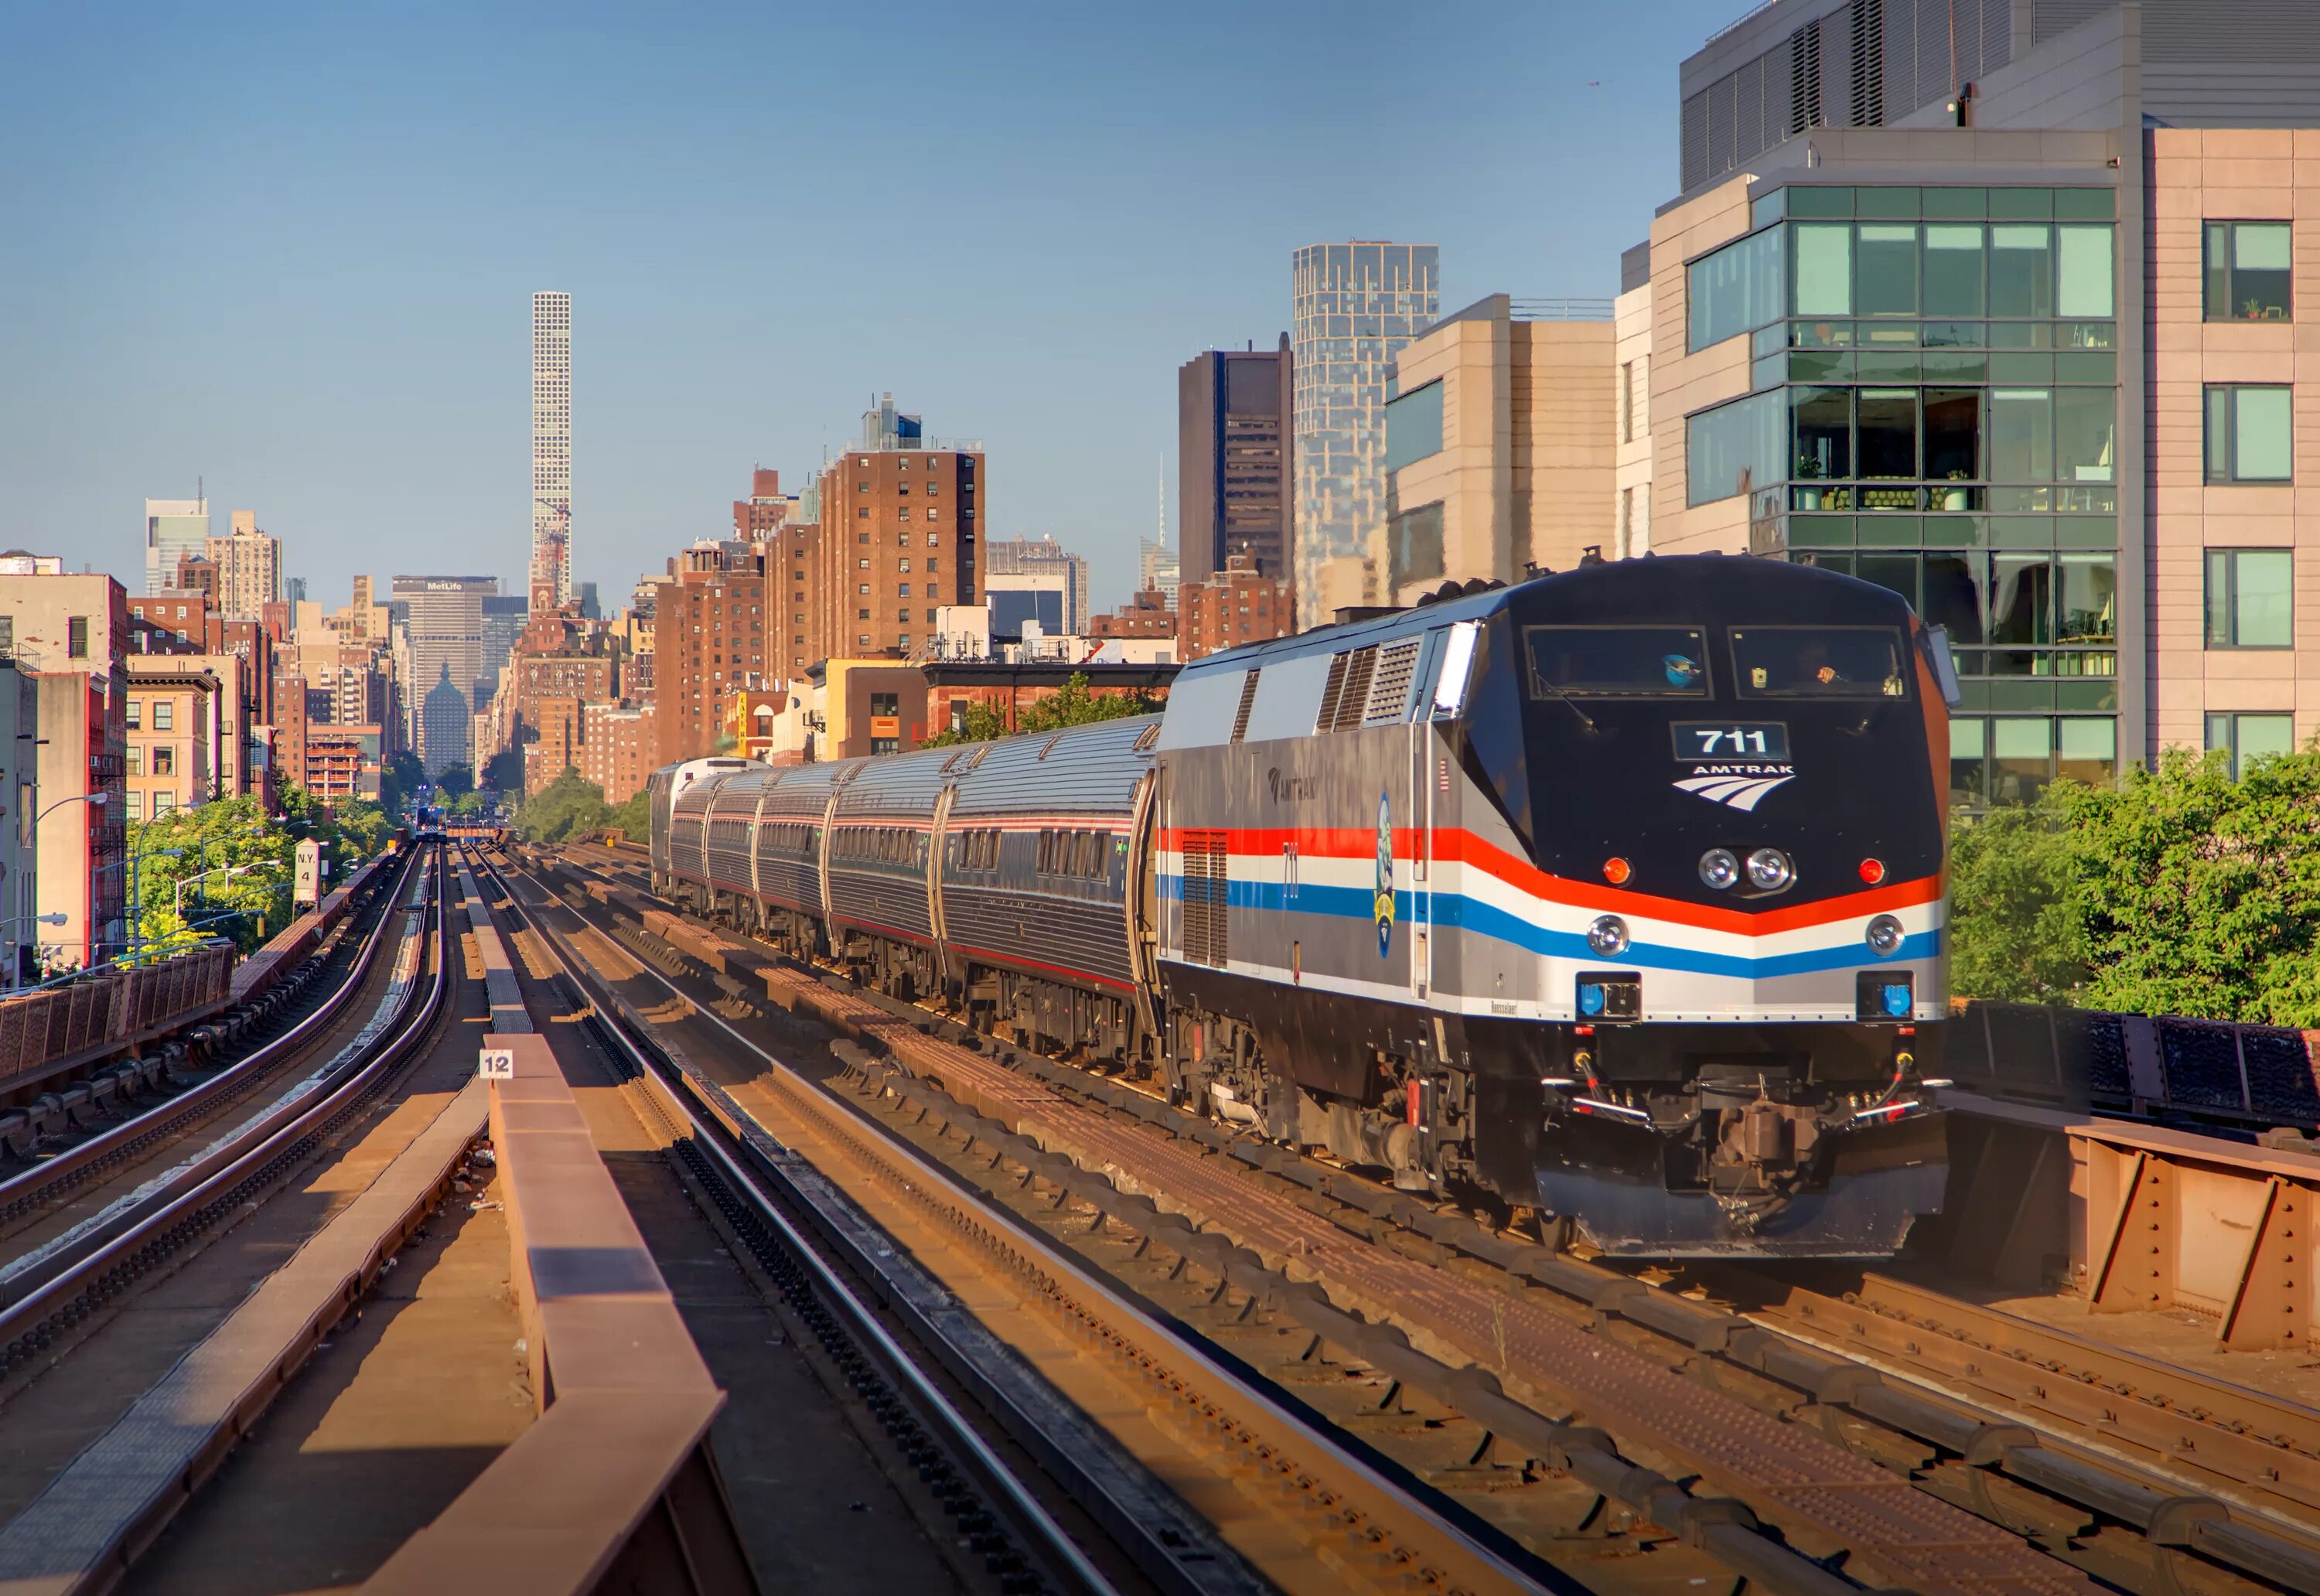 Сайт гранд трейн. Нью Йорк Амтрак. Поезда Amtrak в США. «Амтрак» вокзал. Нью Йорк железная дорога.